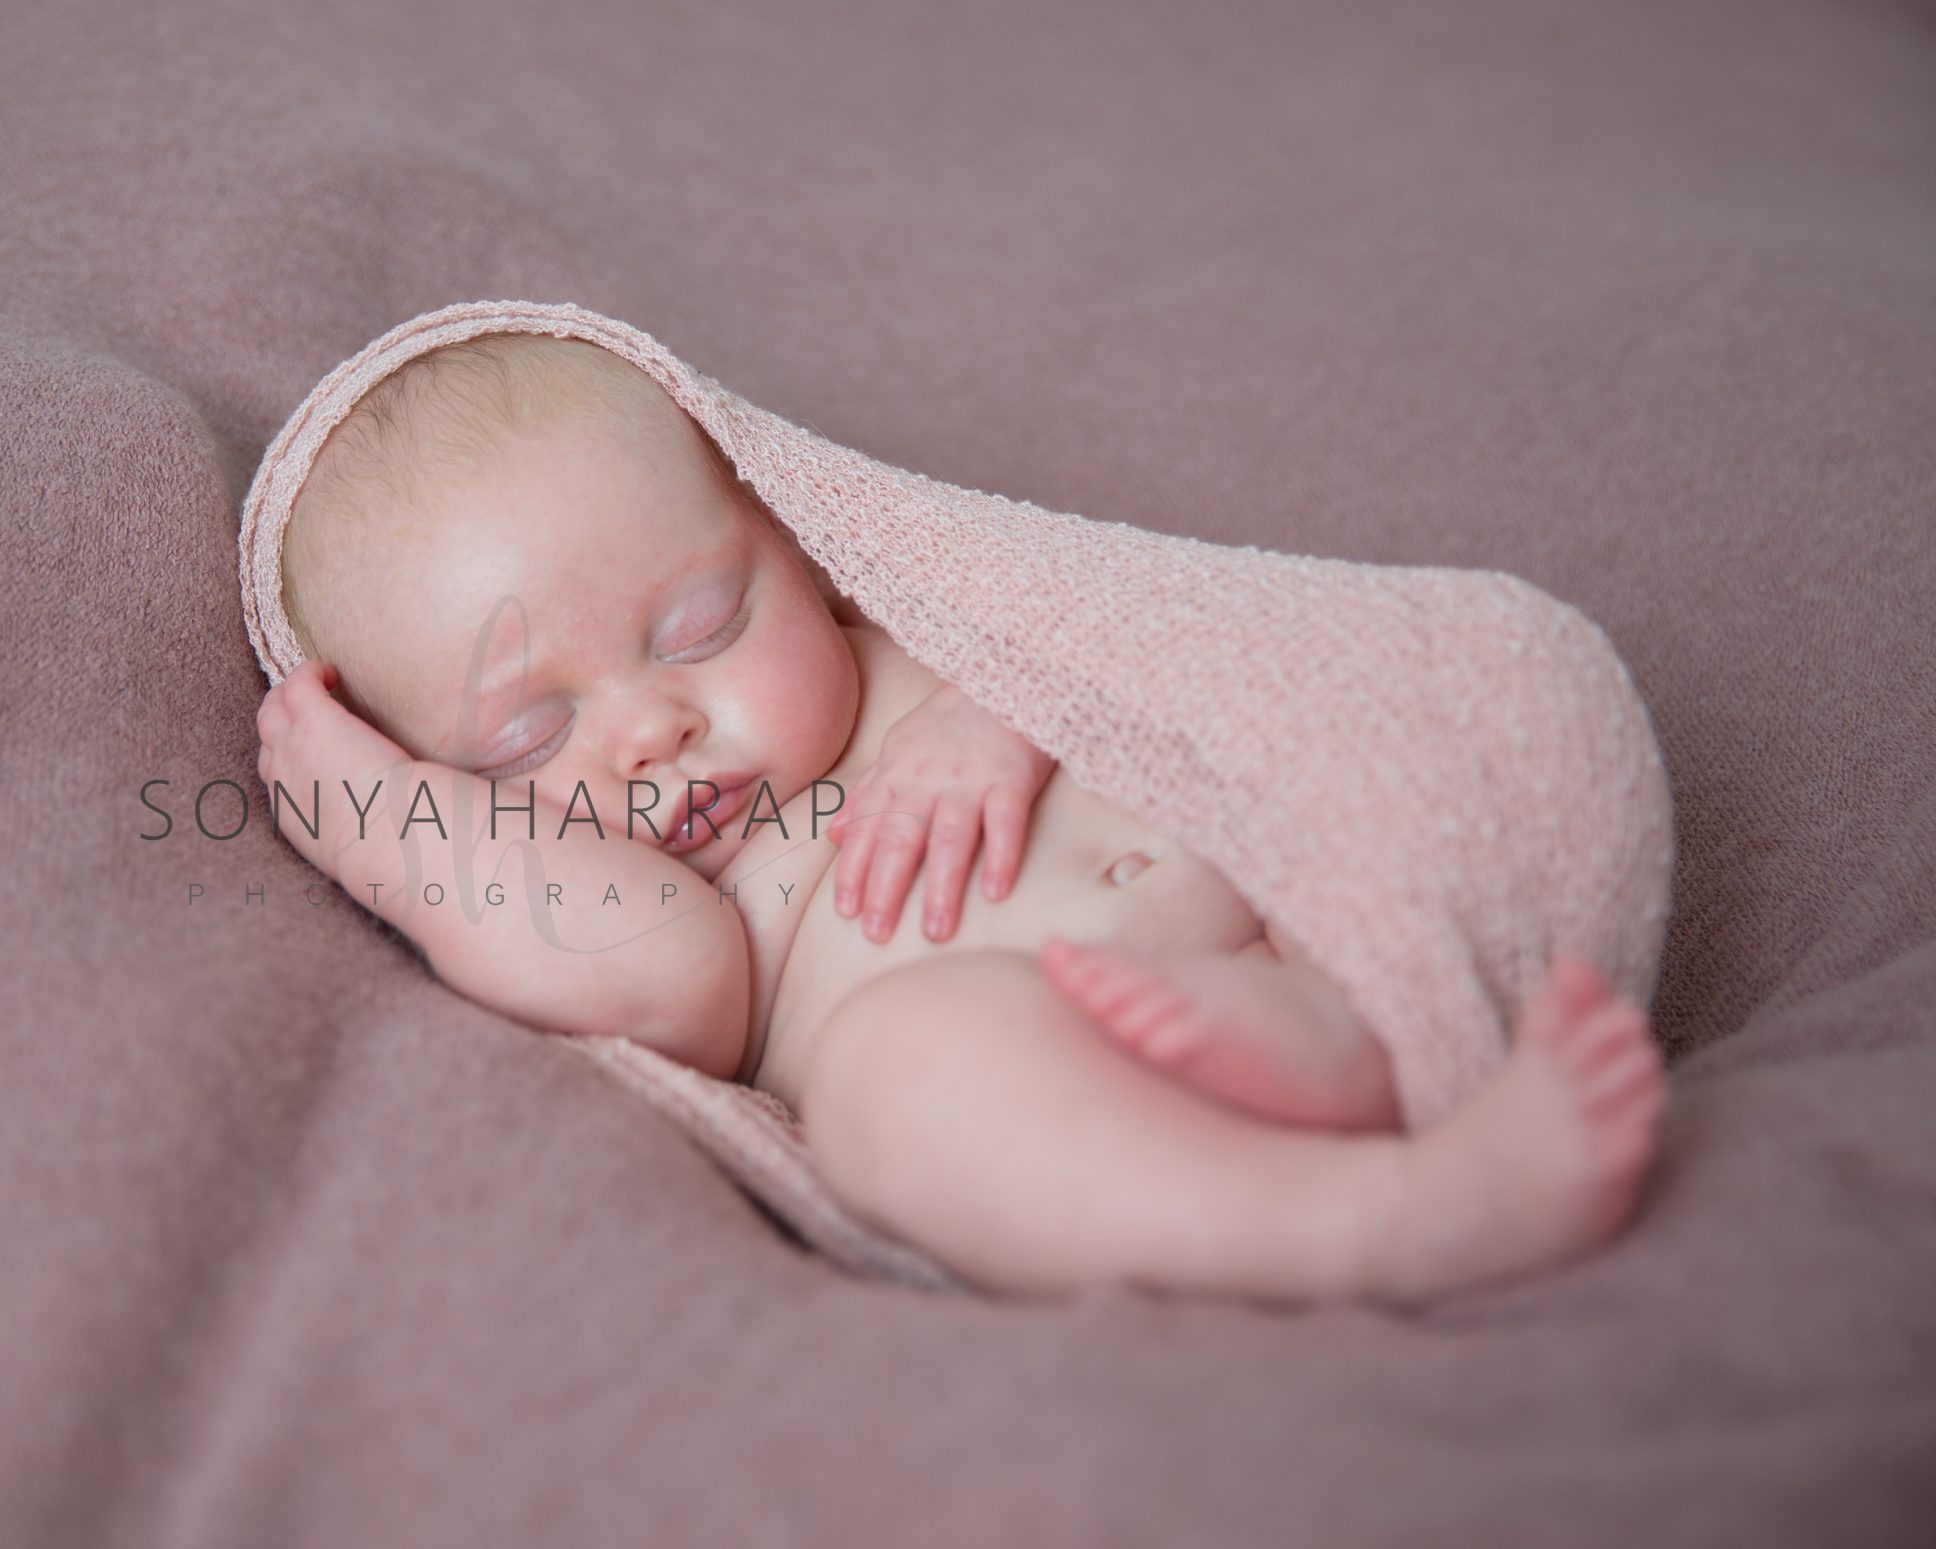 Sonya Harrap newborn baby photography and family portraits Hertfordshire Award winning-7005